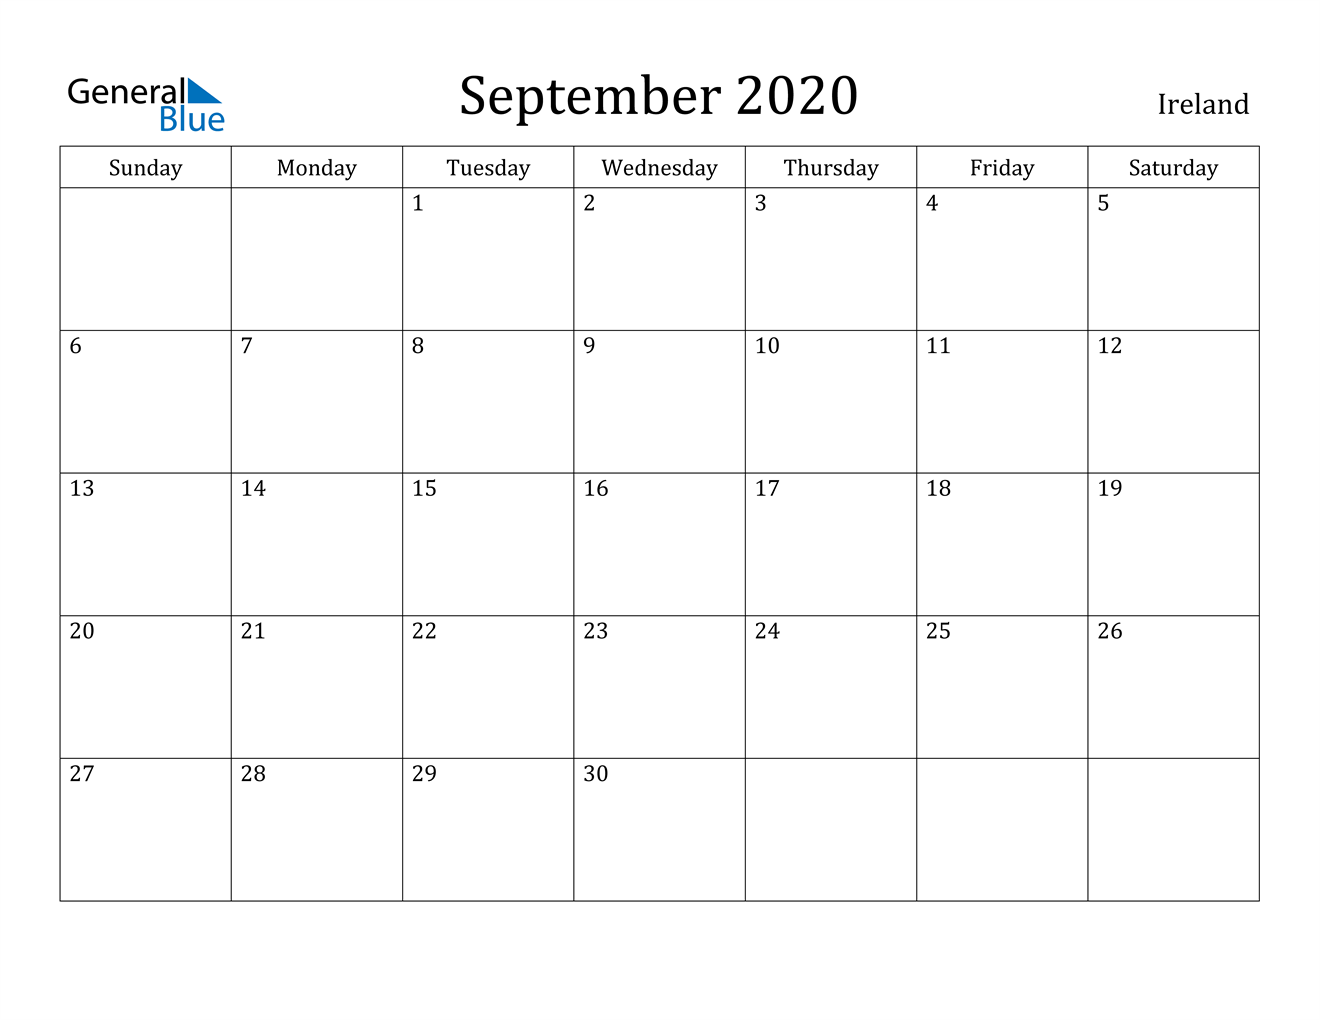 September 2020 Calendar - Ireland